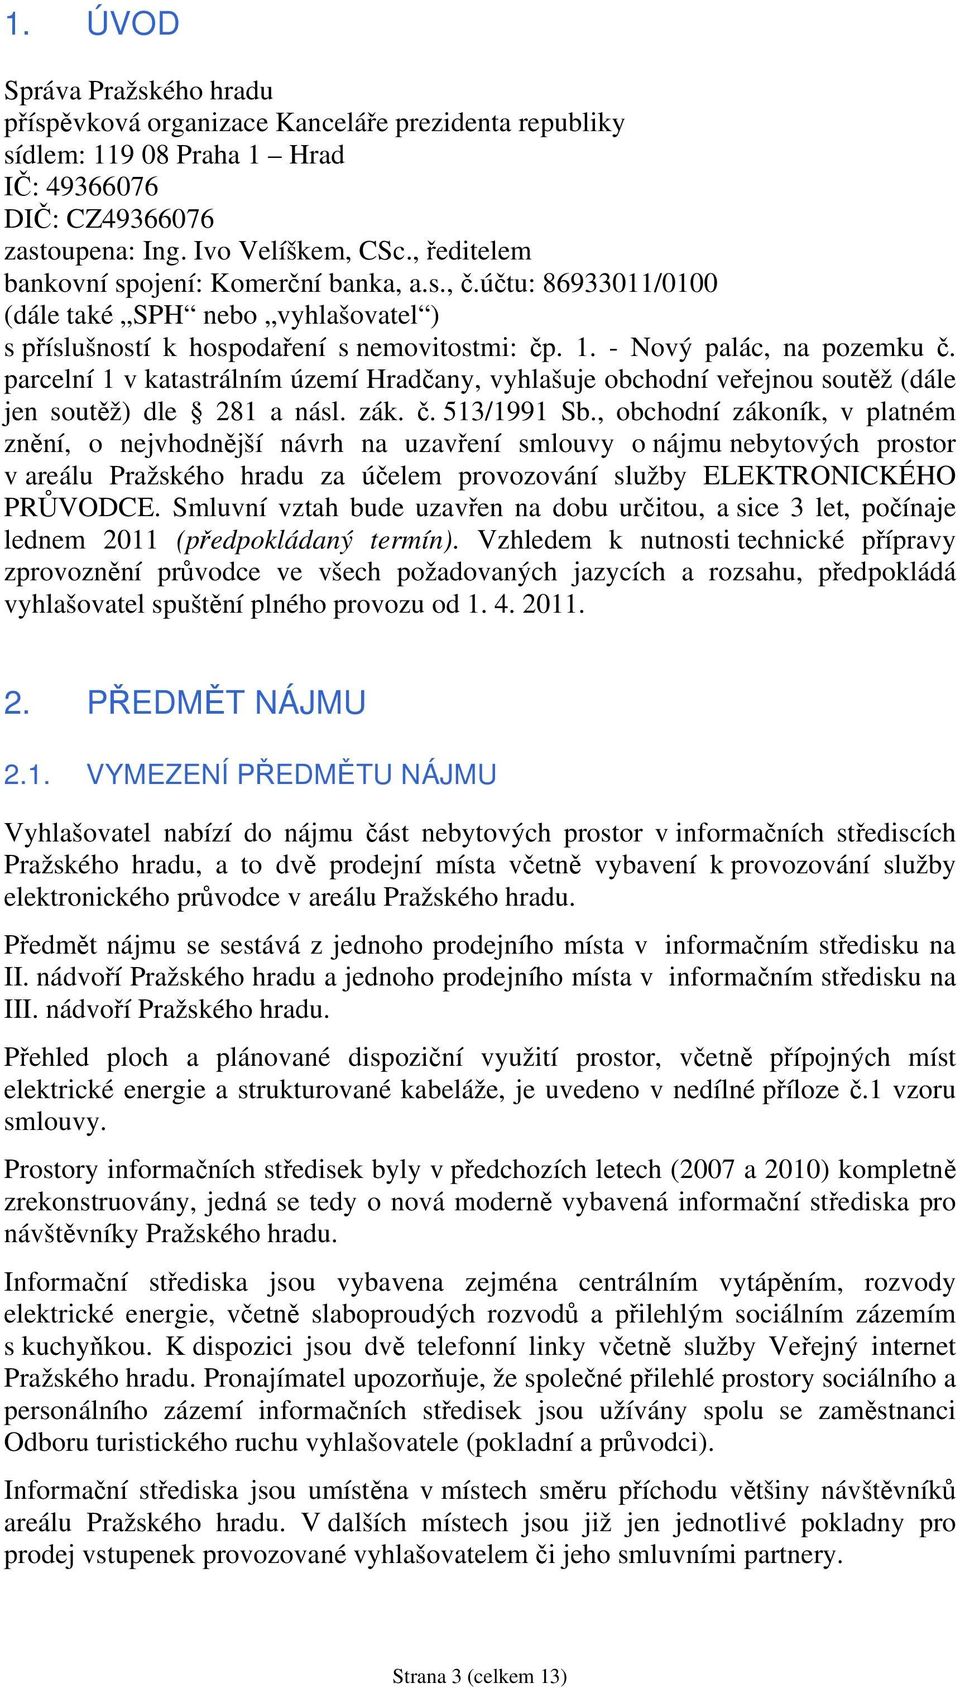 parcelní 1 v katastrálním území Hradčany, vyhlašuje obchodní veřejnou soutěž (dále jen soutěž) dle 281 a násl. zák. č. 513/1991 Sb.